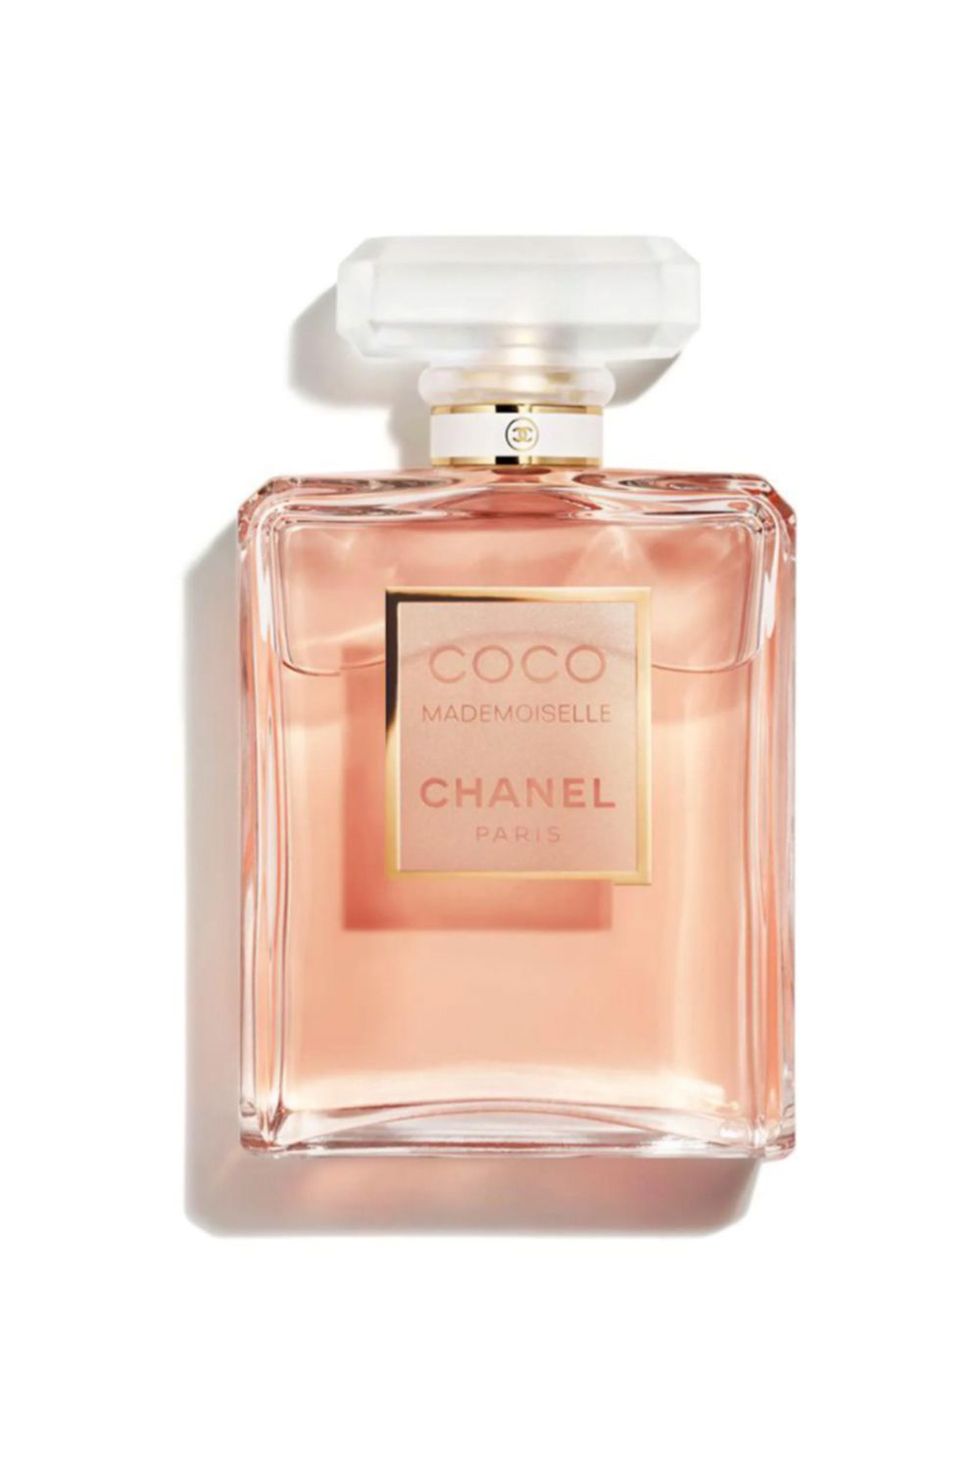 Chance Eau Tendre Eau de Parfum Chanel perfume - a fragrance for women 2019